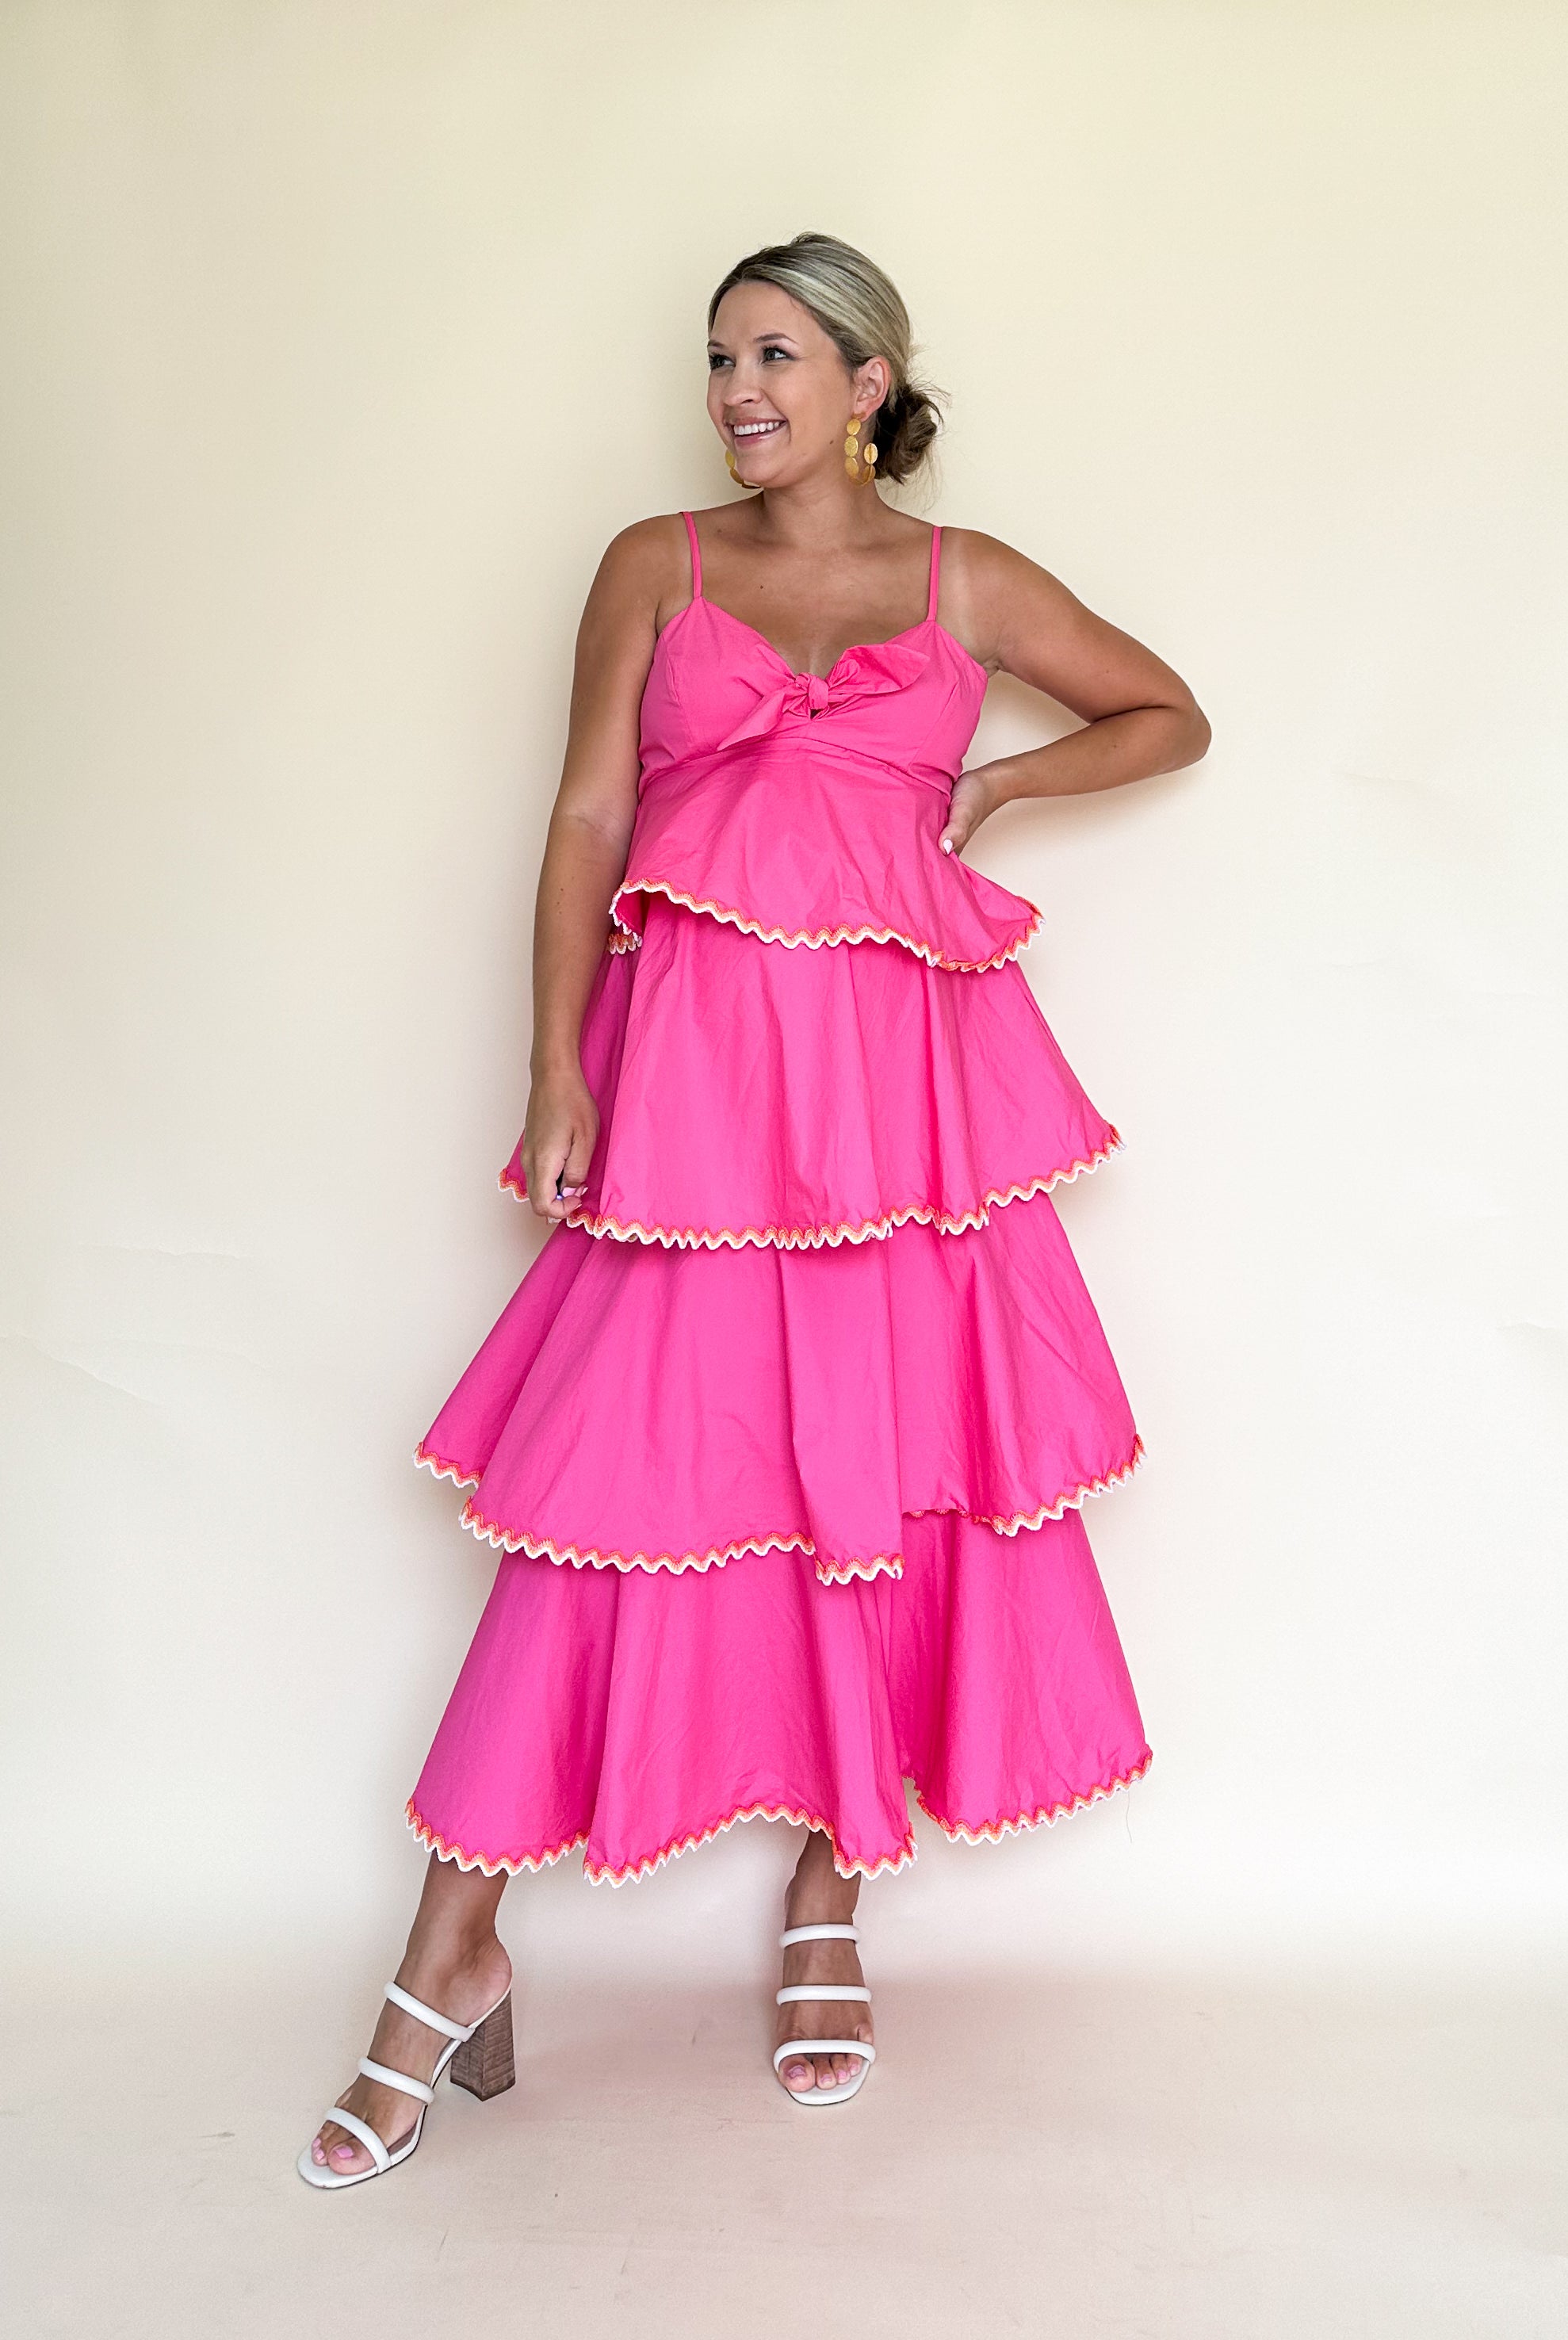 august apparel hot pink ruffle maxi dress